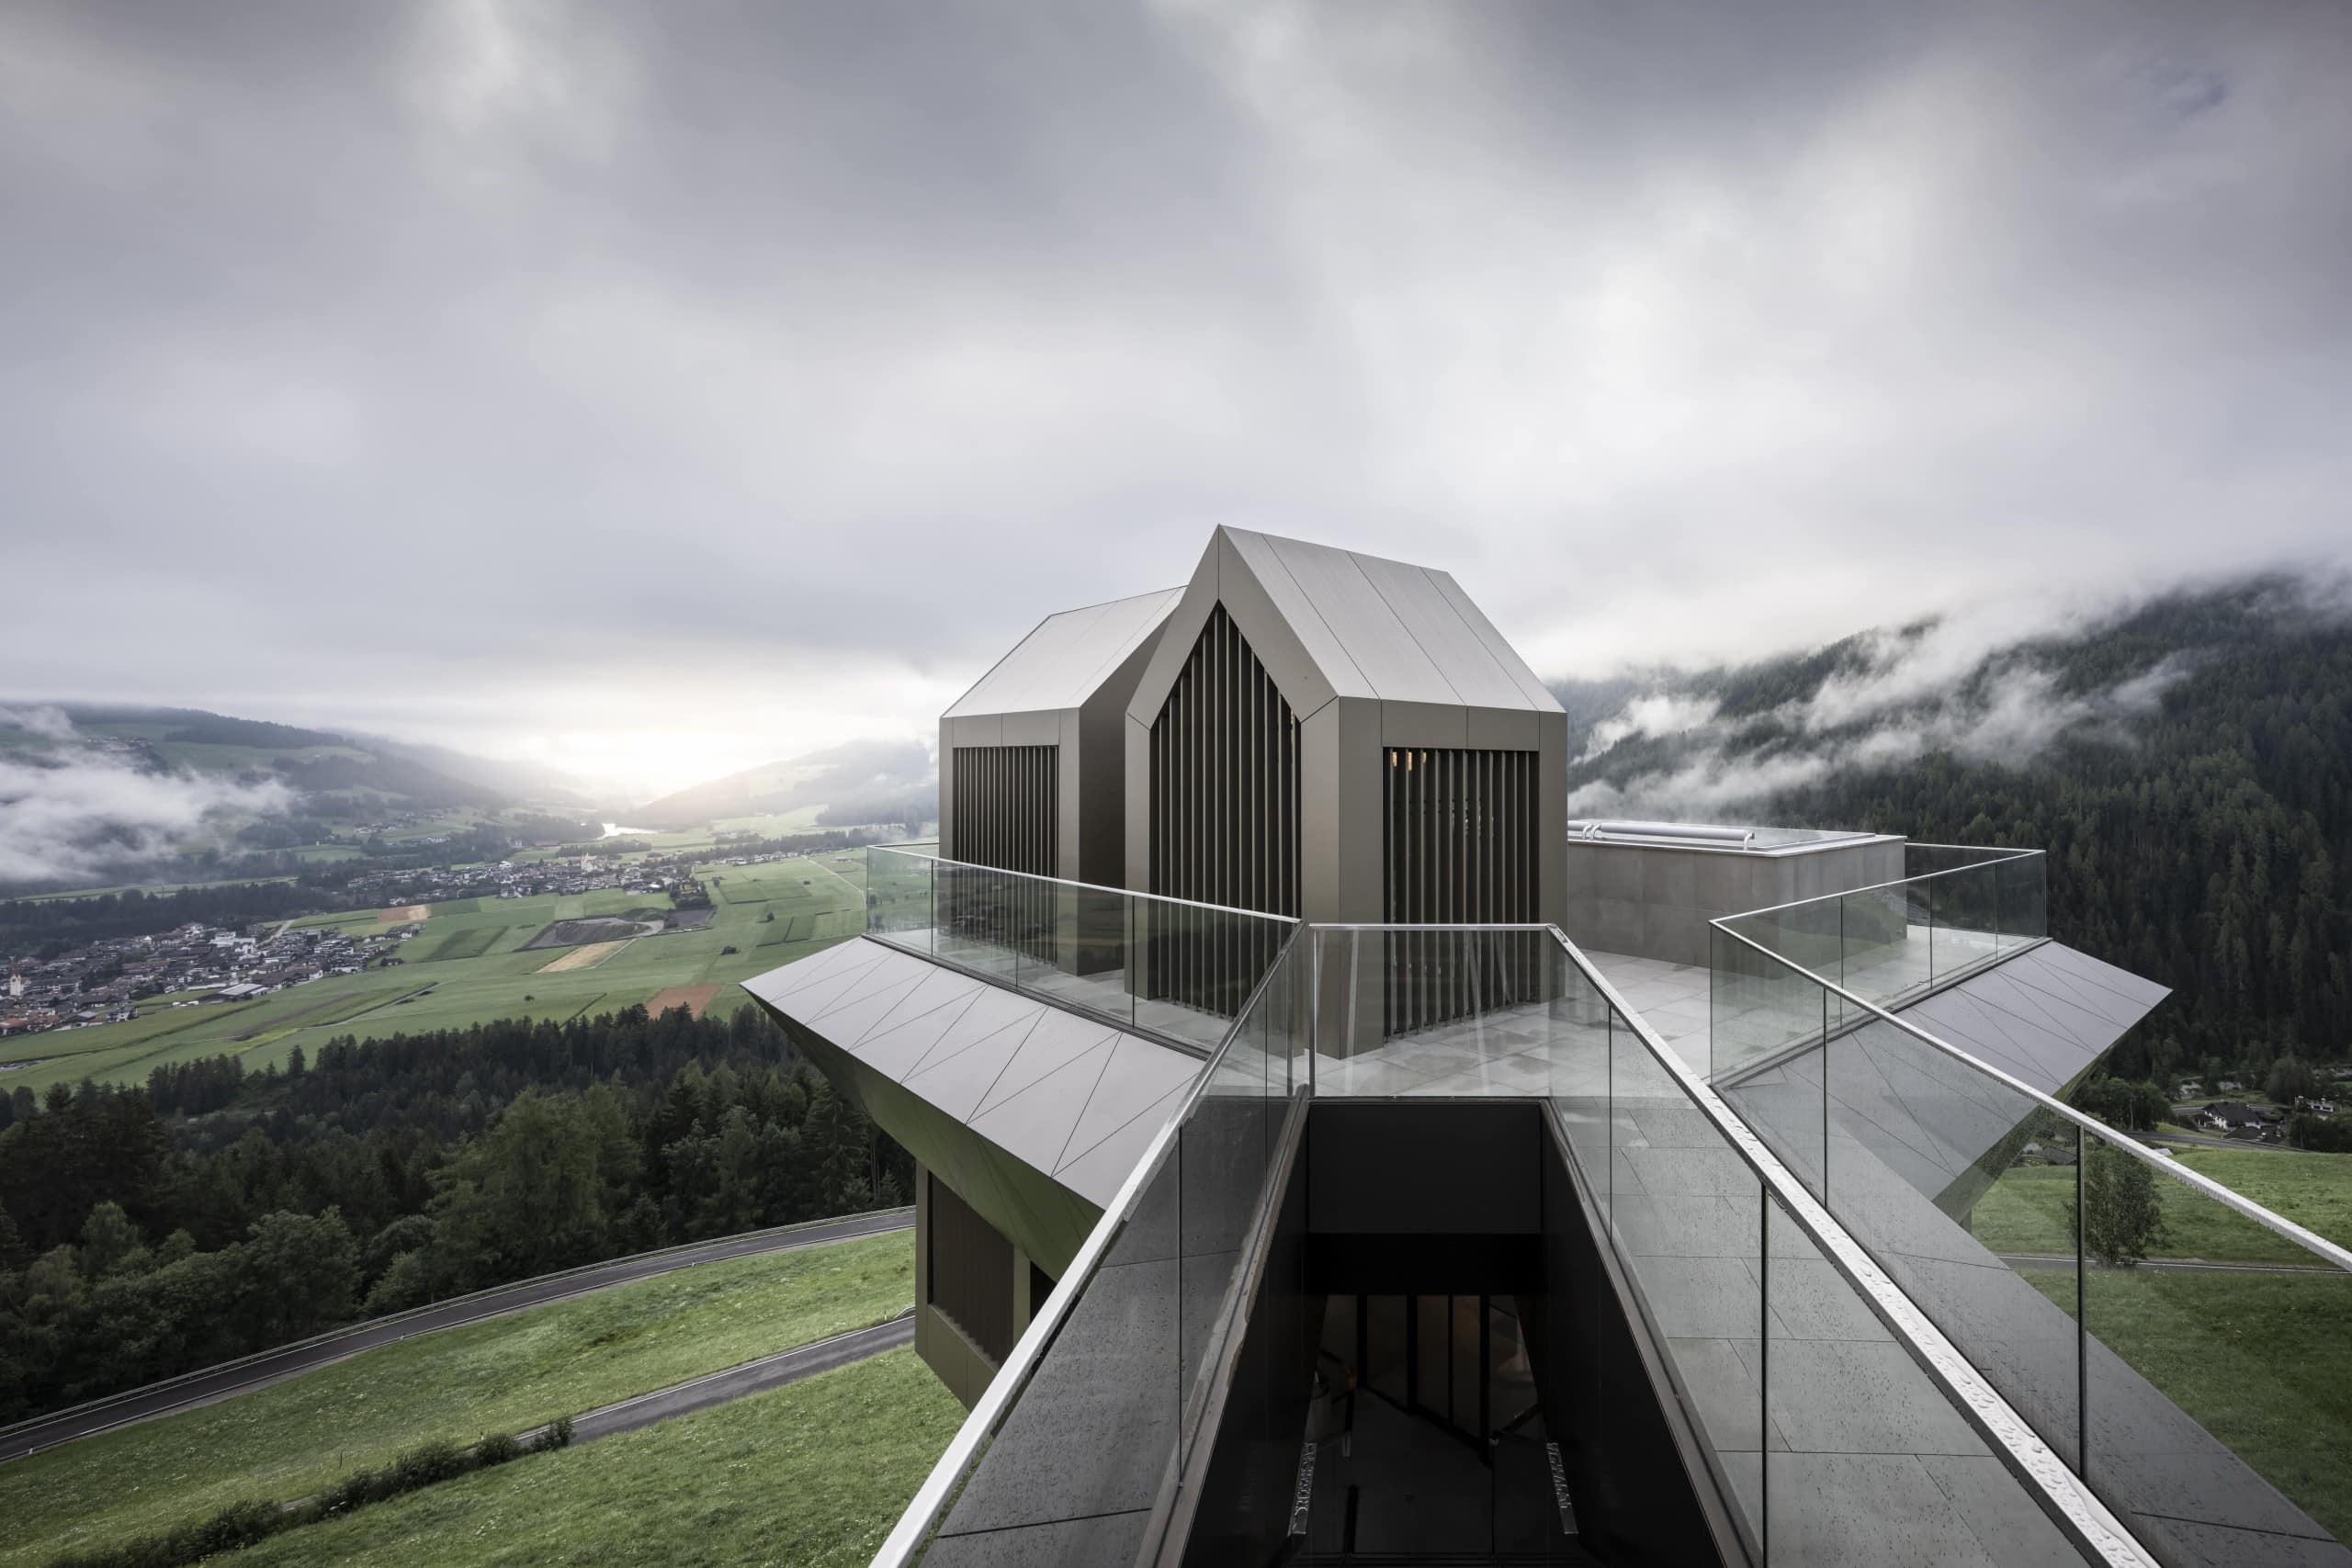 Blick auf eine Plattform mit mehreren kleinen Hütten mit Aluminiumfassade, im Hintergrund Berge, Hügel und graue Wolken. Noa* Network of Architecture, Hub of Huts, Hotel Hubertus Olang, Foto: ©AlexFilz